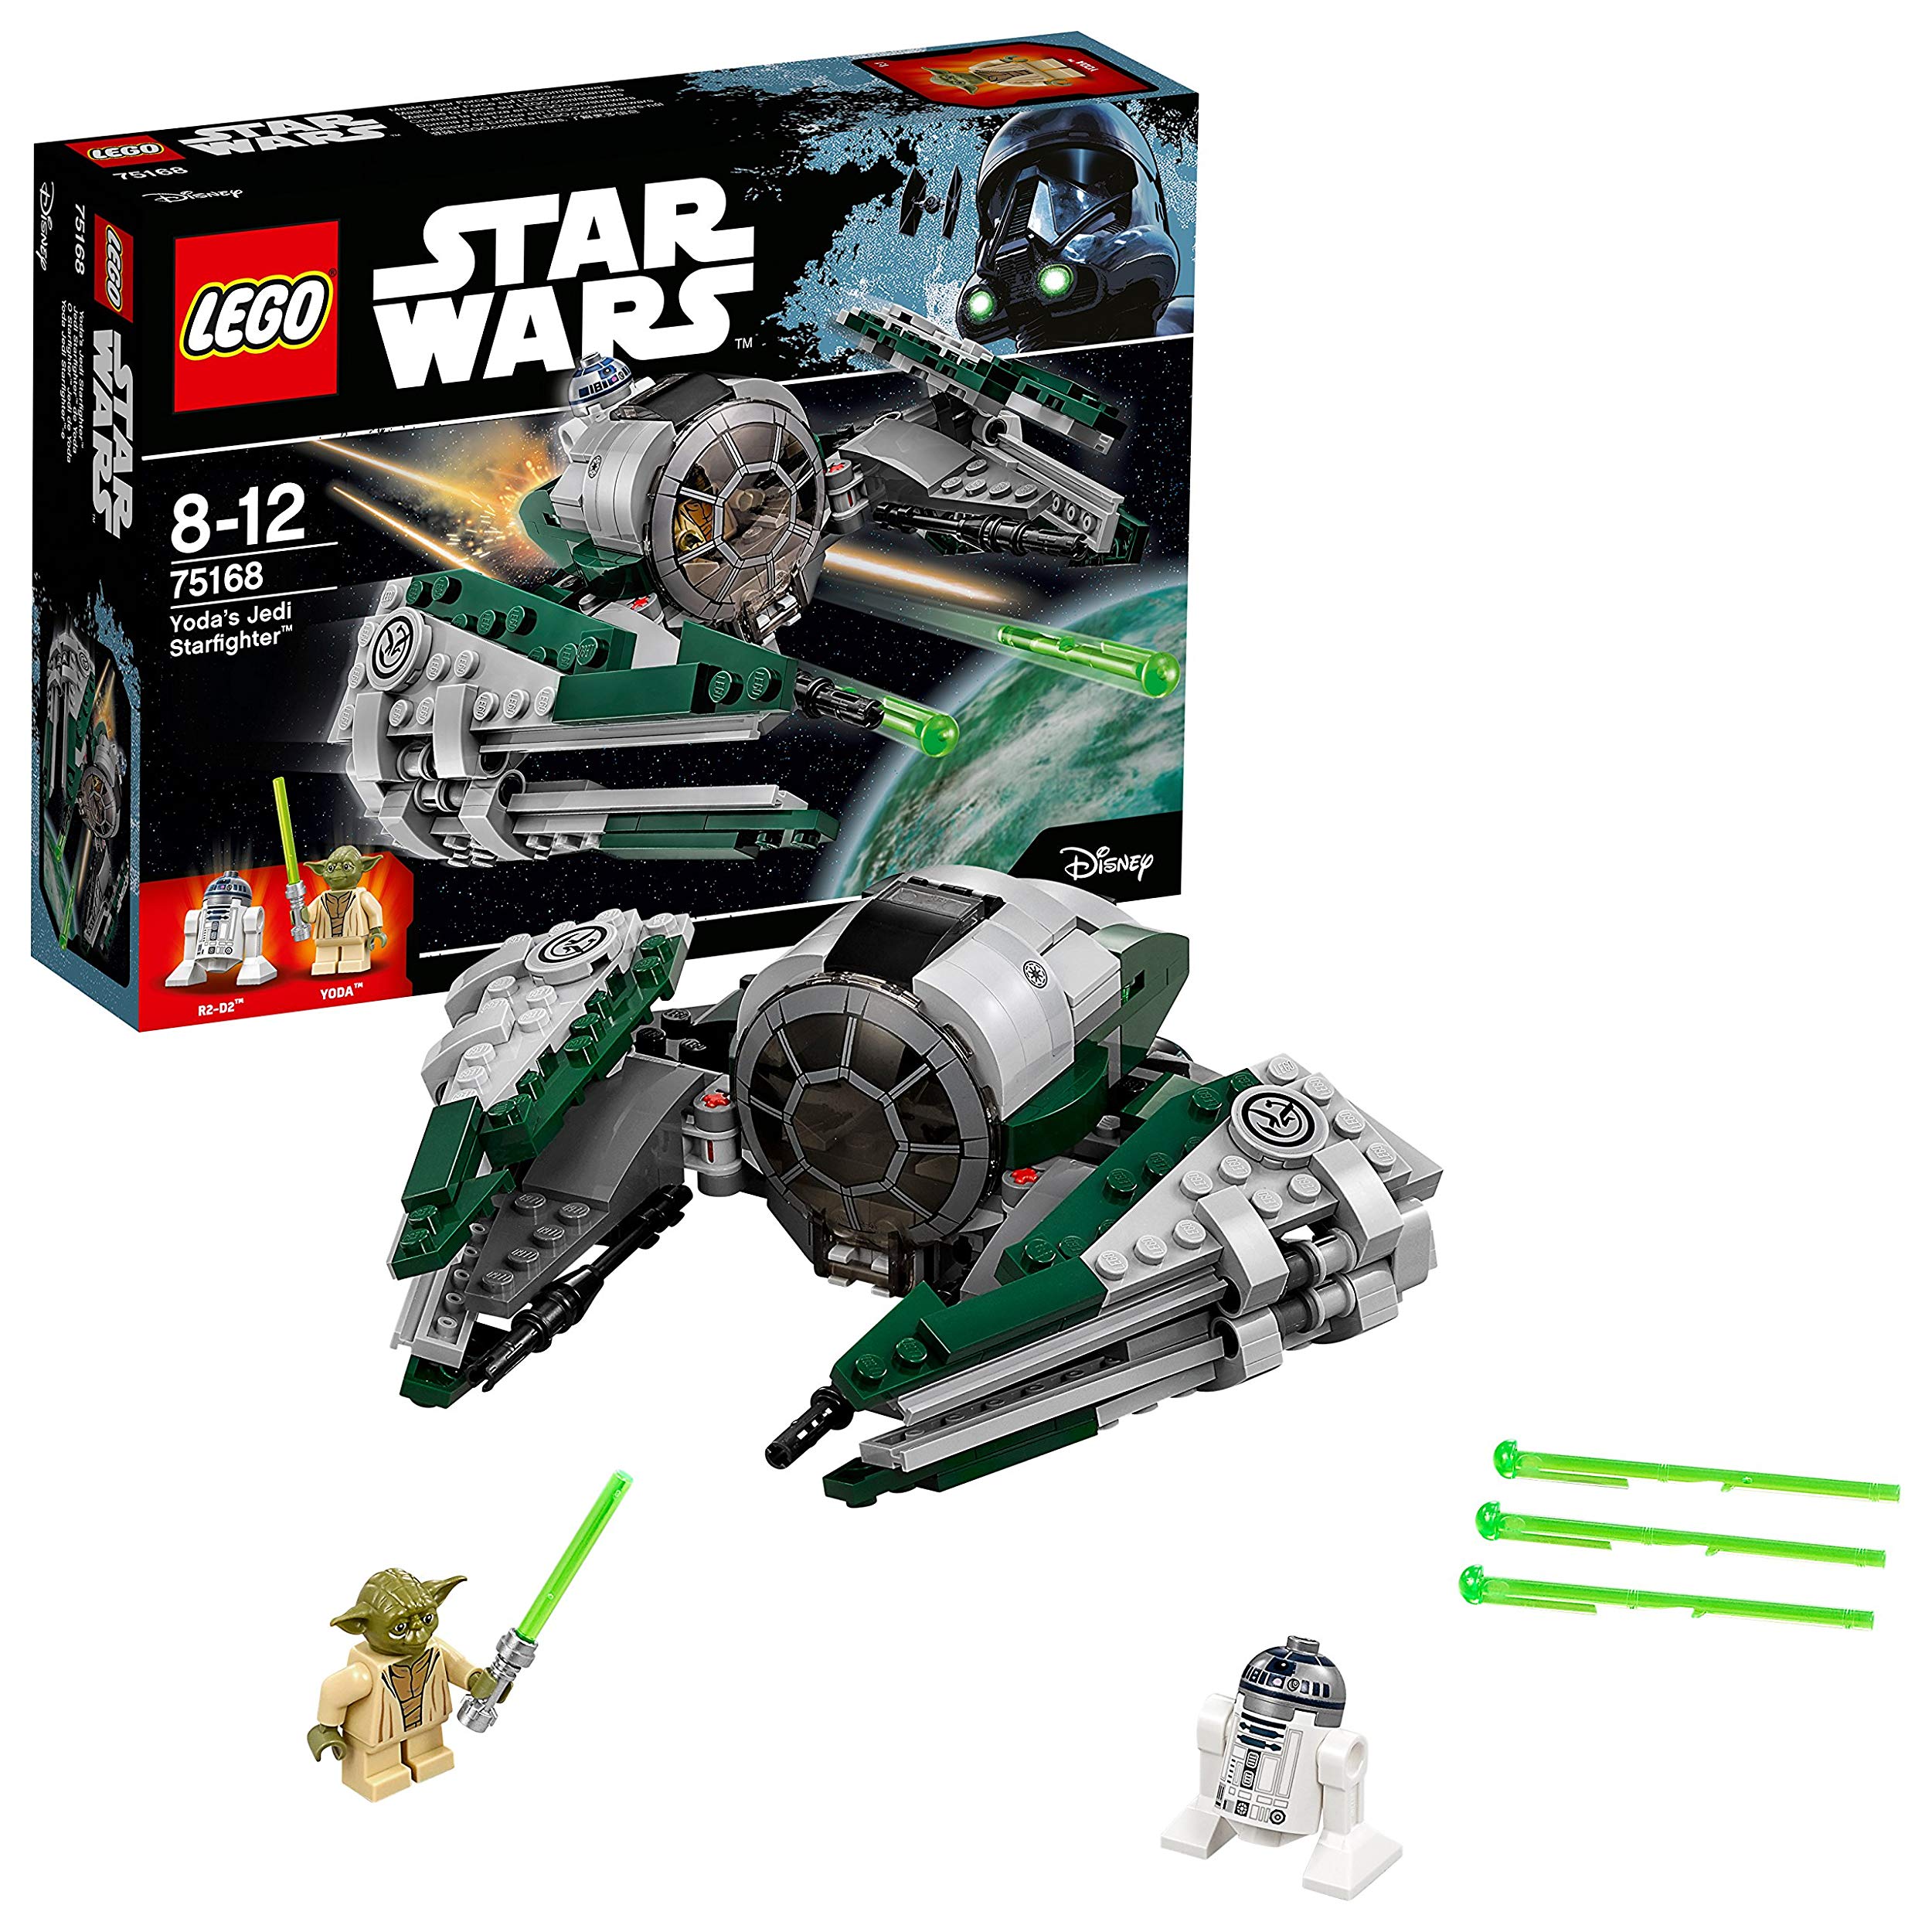 Lego Star Wars Yodas Jedi Starfighter Star Wars Toy